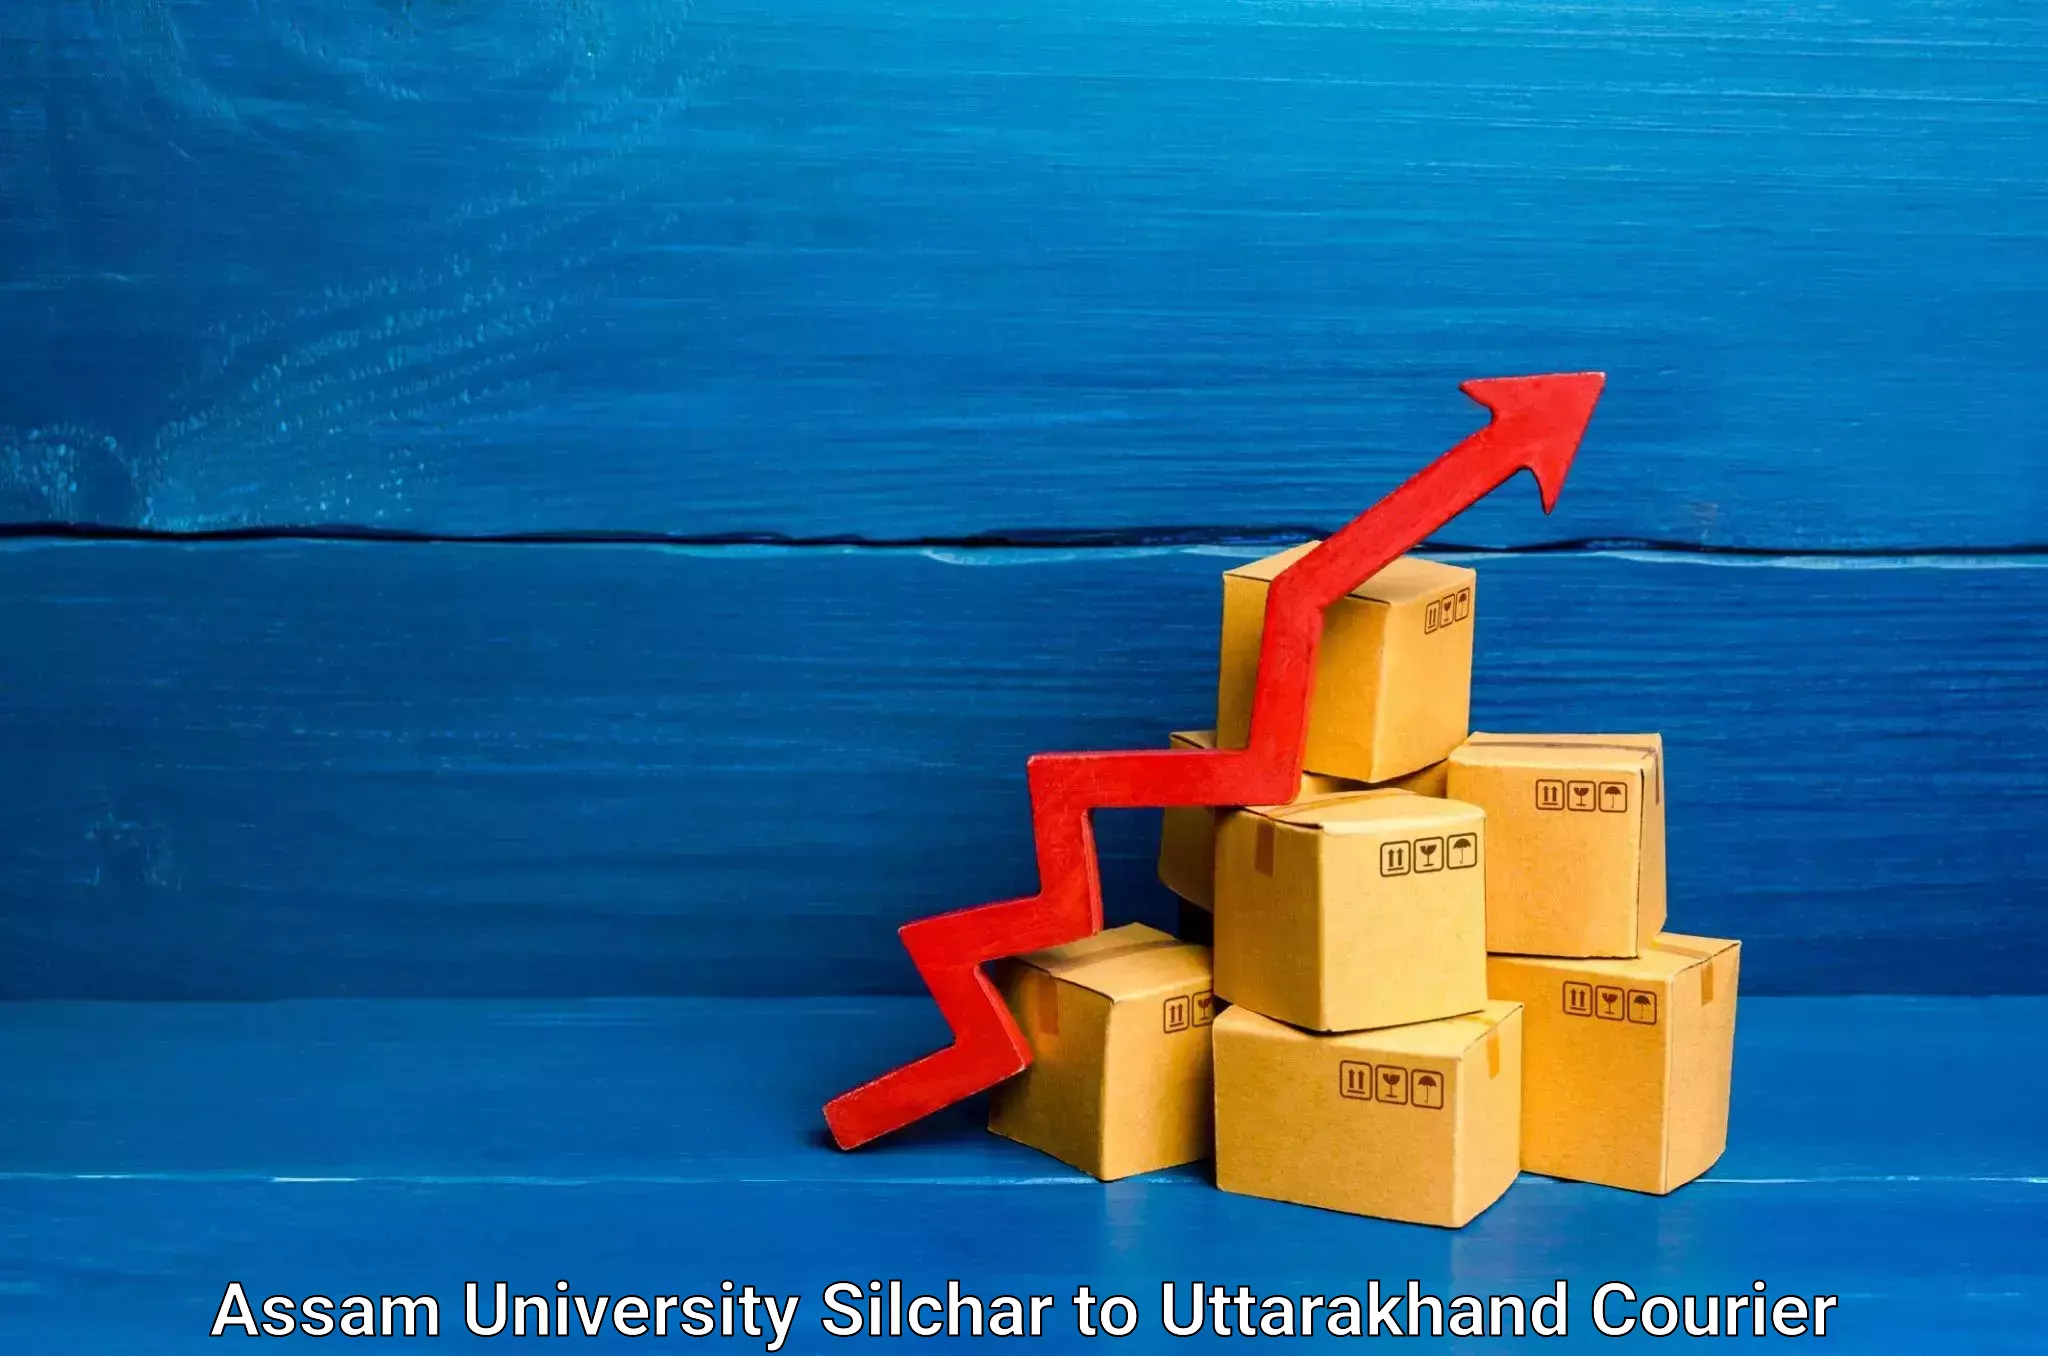 Express package handling Assam University Silchar to Uttarakhand